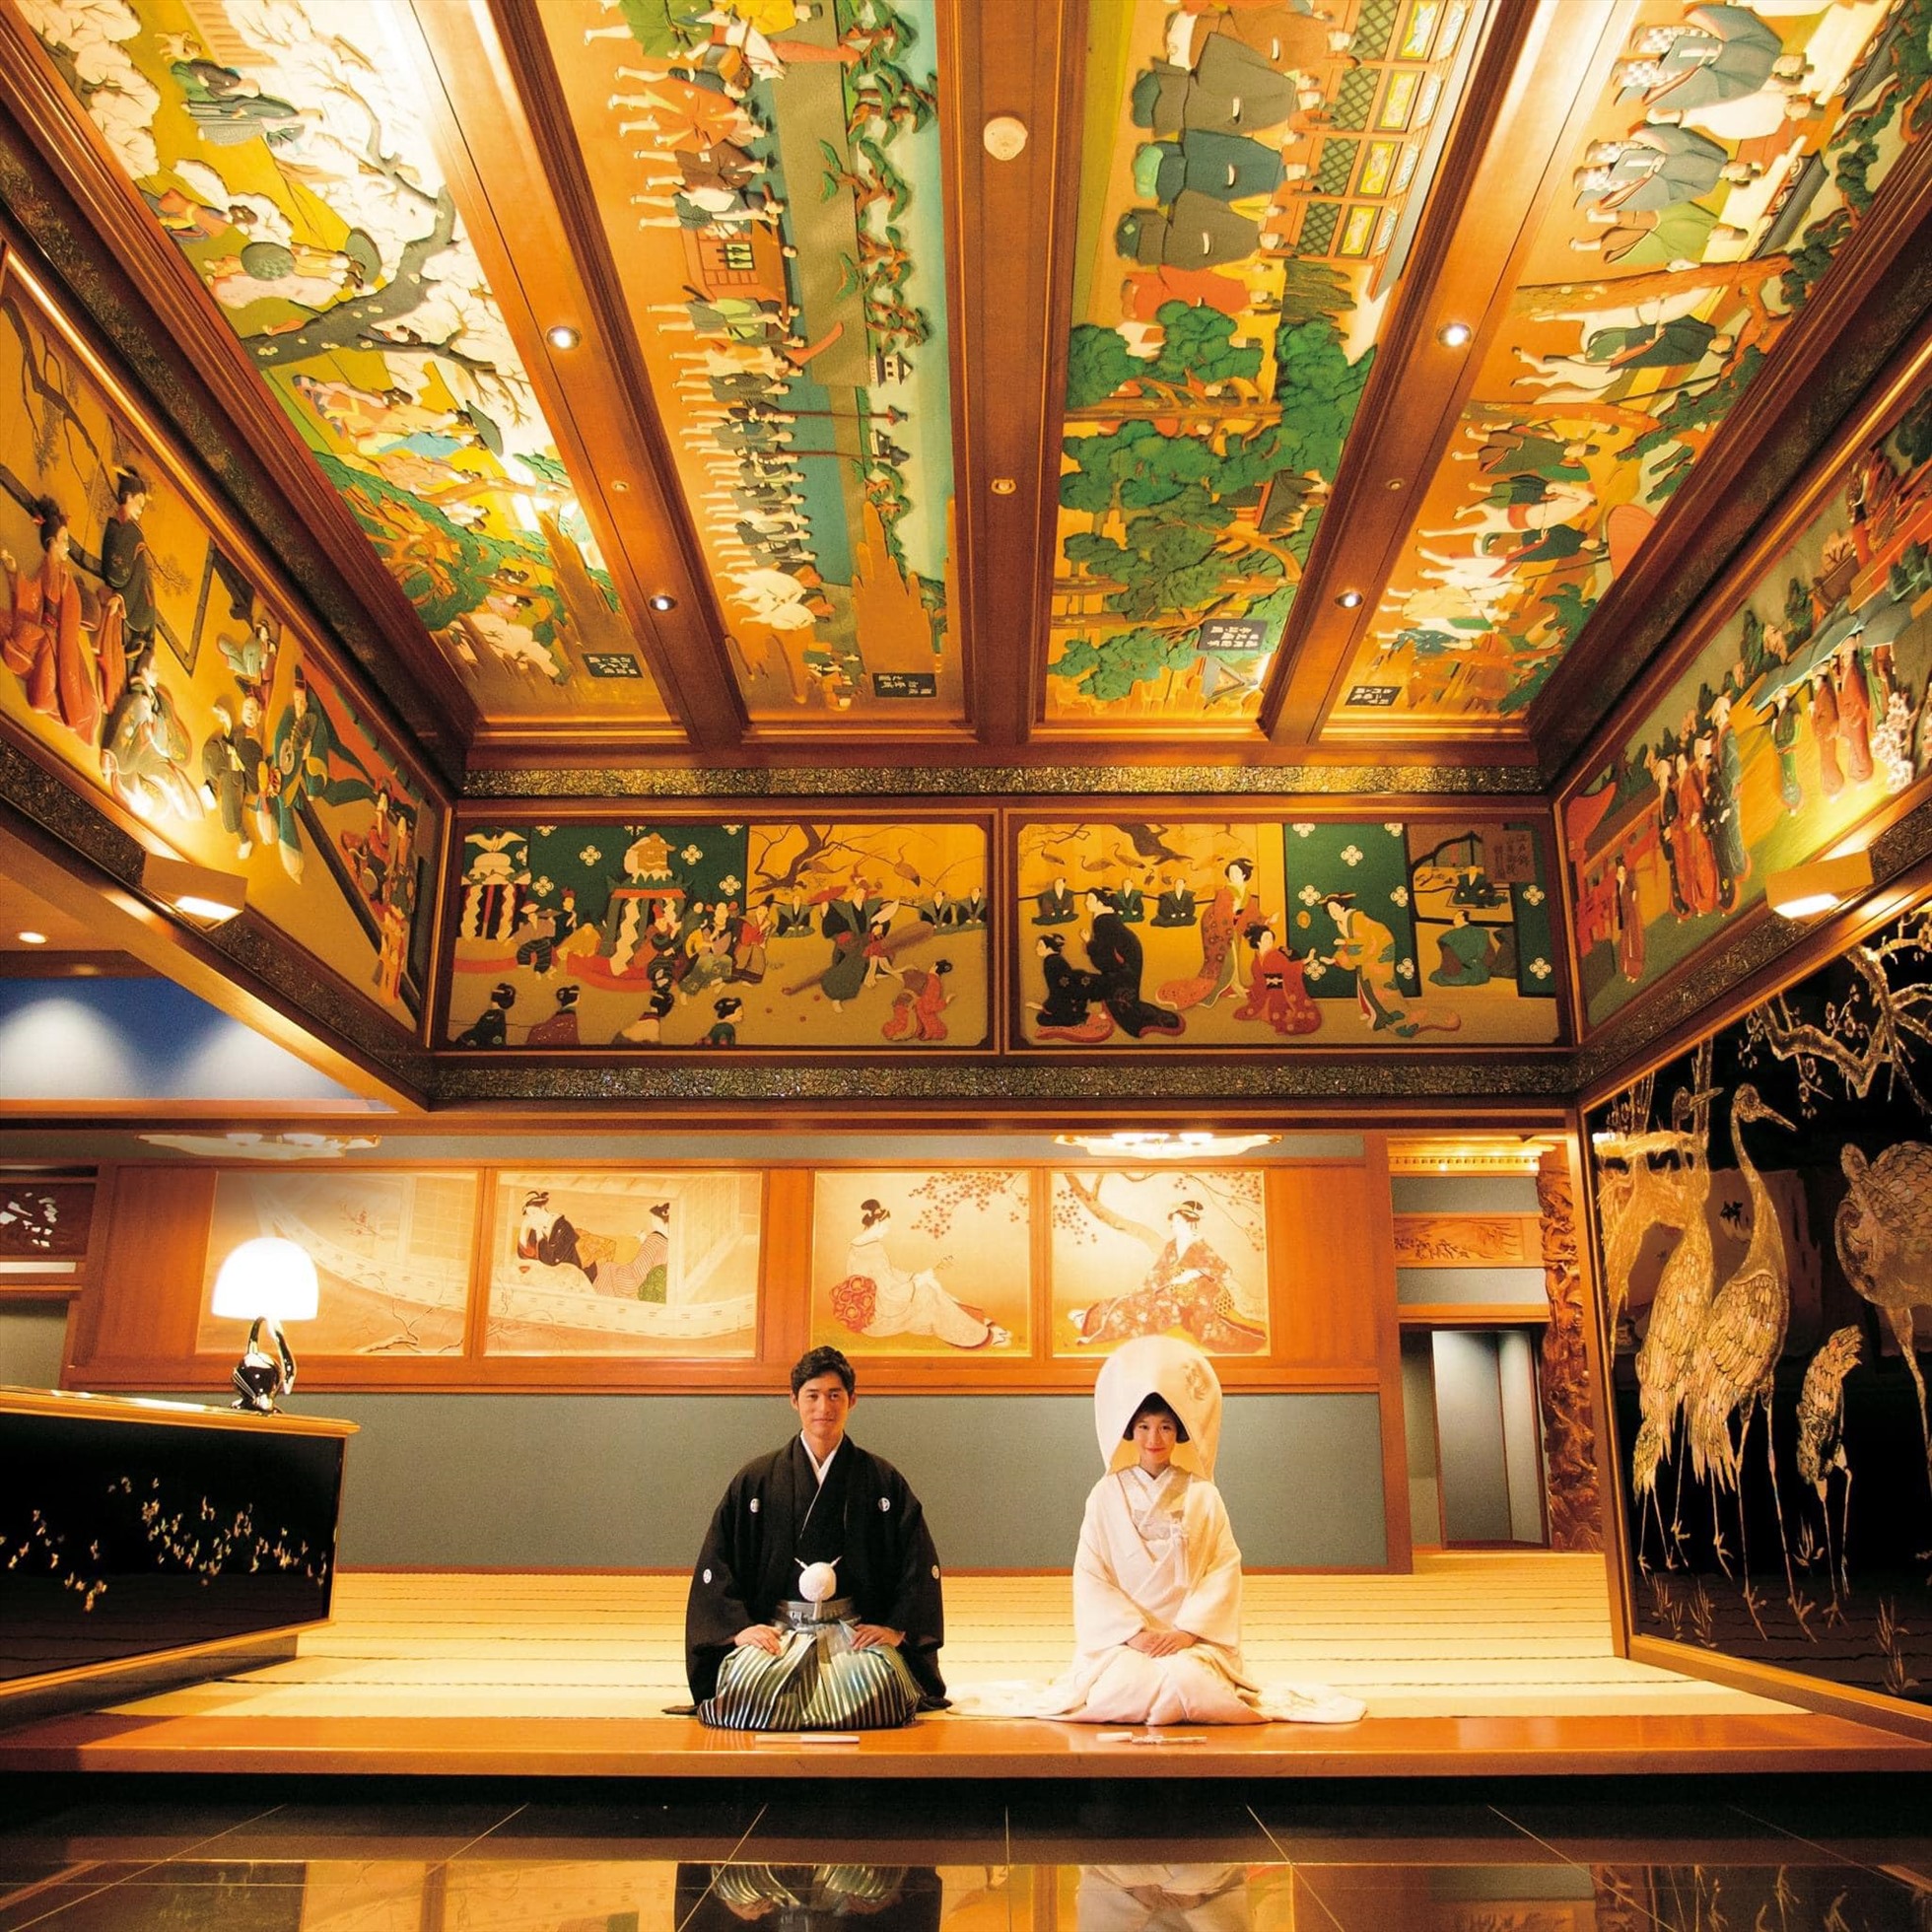 Khi mới khi mới khai trương đến nay, Gajoen luôn nổi tiếng là khách sạn tổ chức tiệc cưới lên tới 30 đám cưới mỗi ngày. Vì thế bất kì lúc nào, du khách cũng sẽ bắt gặp những đôi vợ chồng trẻ hạnh phúc trong bộ kimono xinh đẹp hay lễ phục trang trọng.